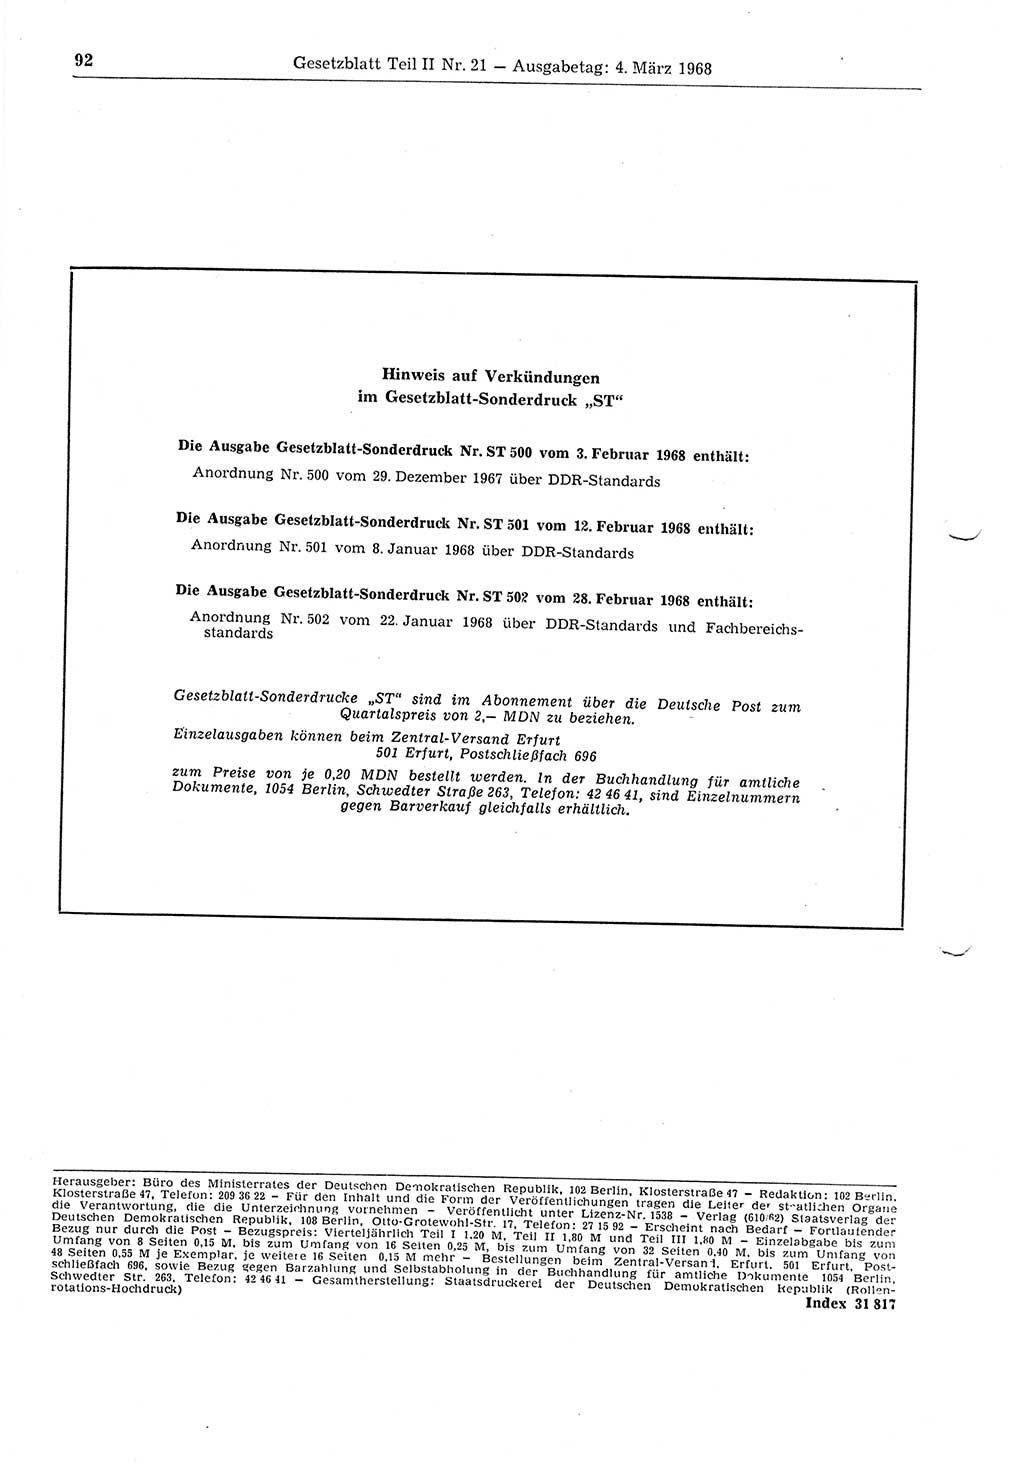 Gesetzblatt (GBl.) der Deutschen Demokratischen Republik (DDR) Teil ⅠⅠ 1968, Seite 92 (GBl. DDR ⅠⅠ 1968, S. 92)